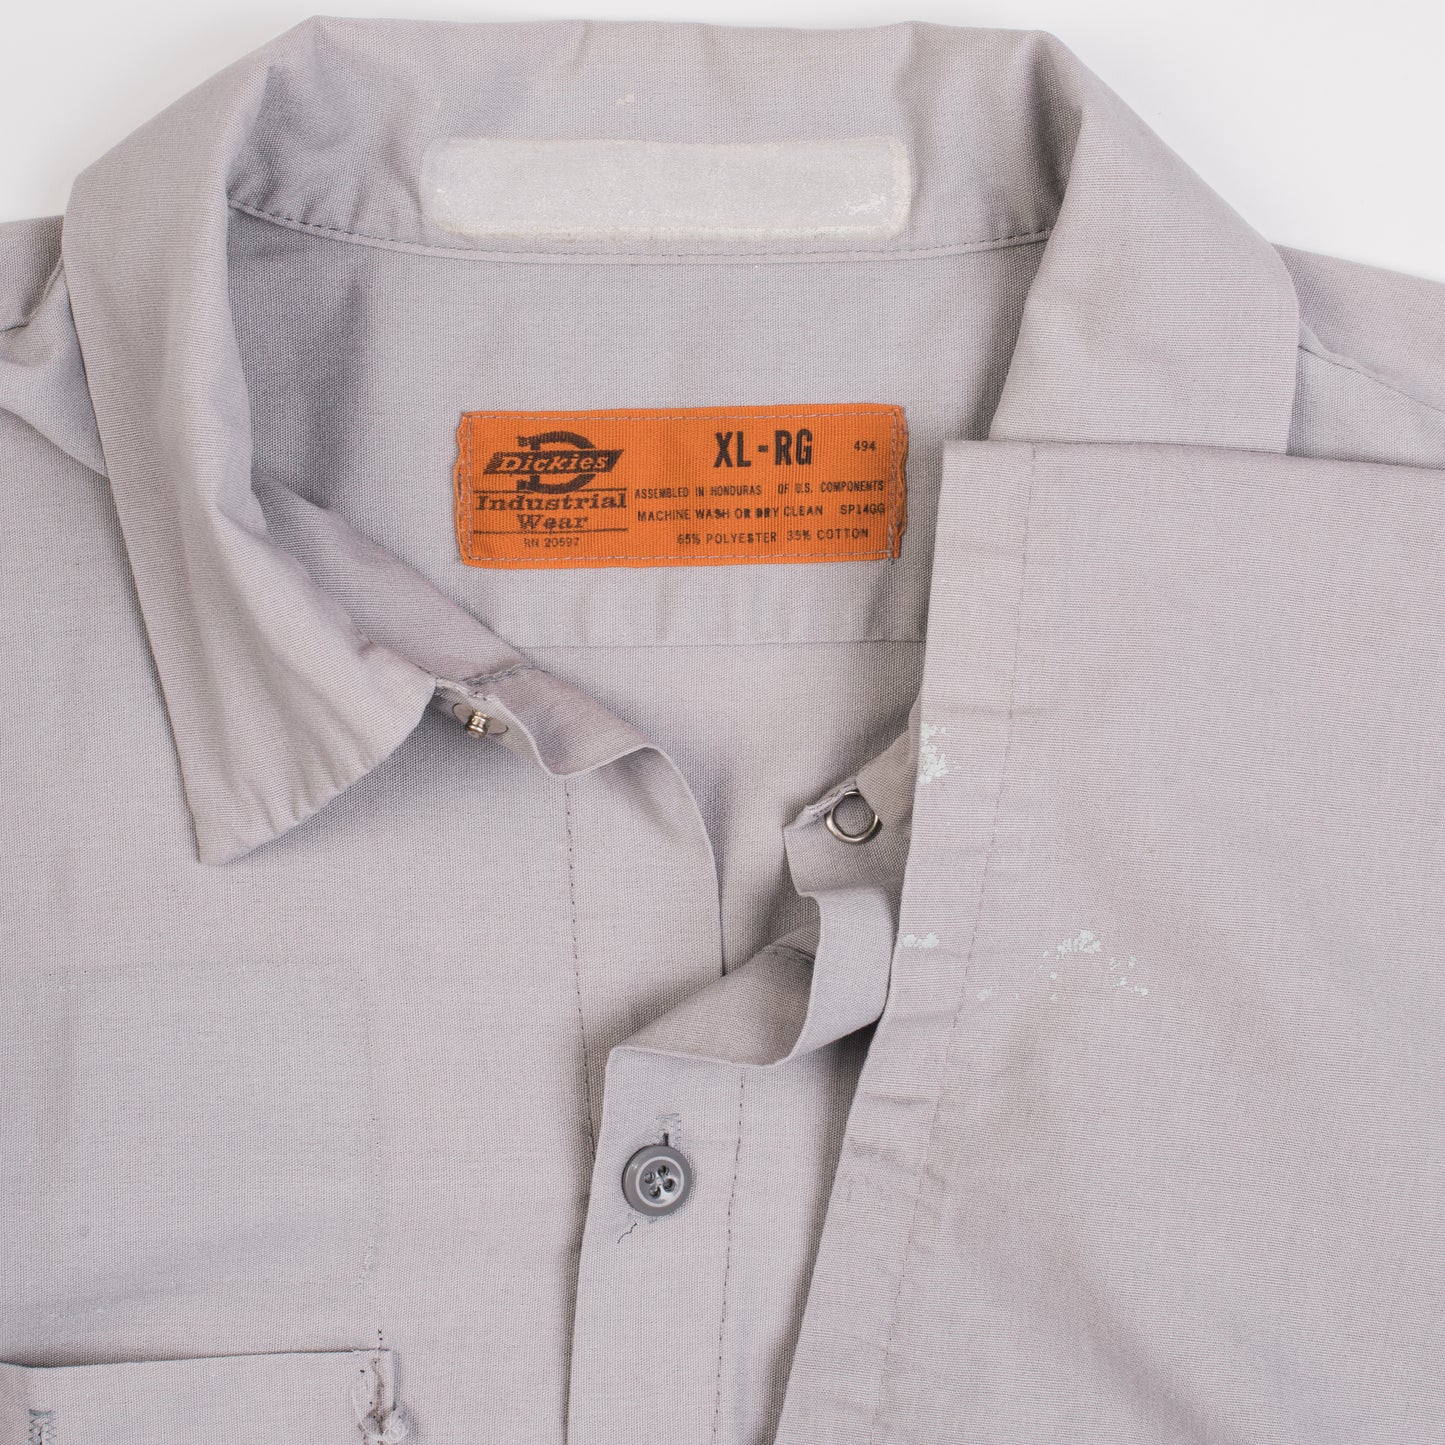 Vintage 90’s Turmoil Dickies Work Shirt